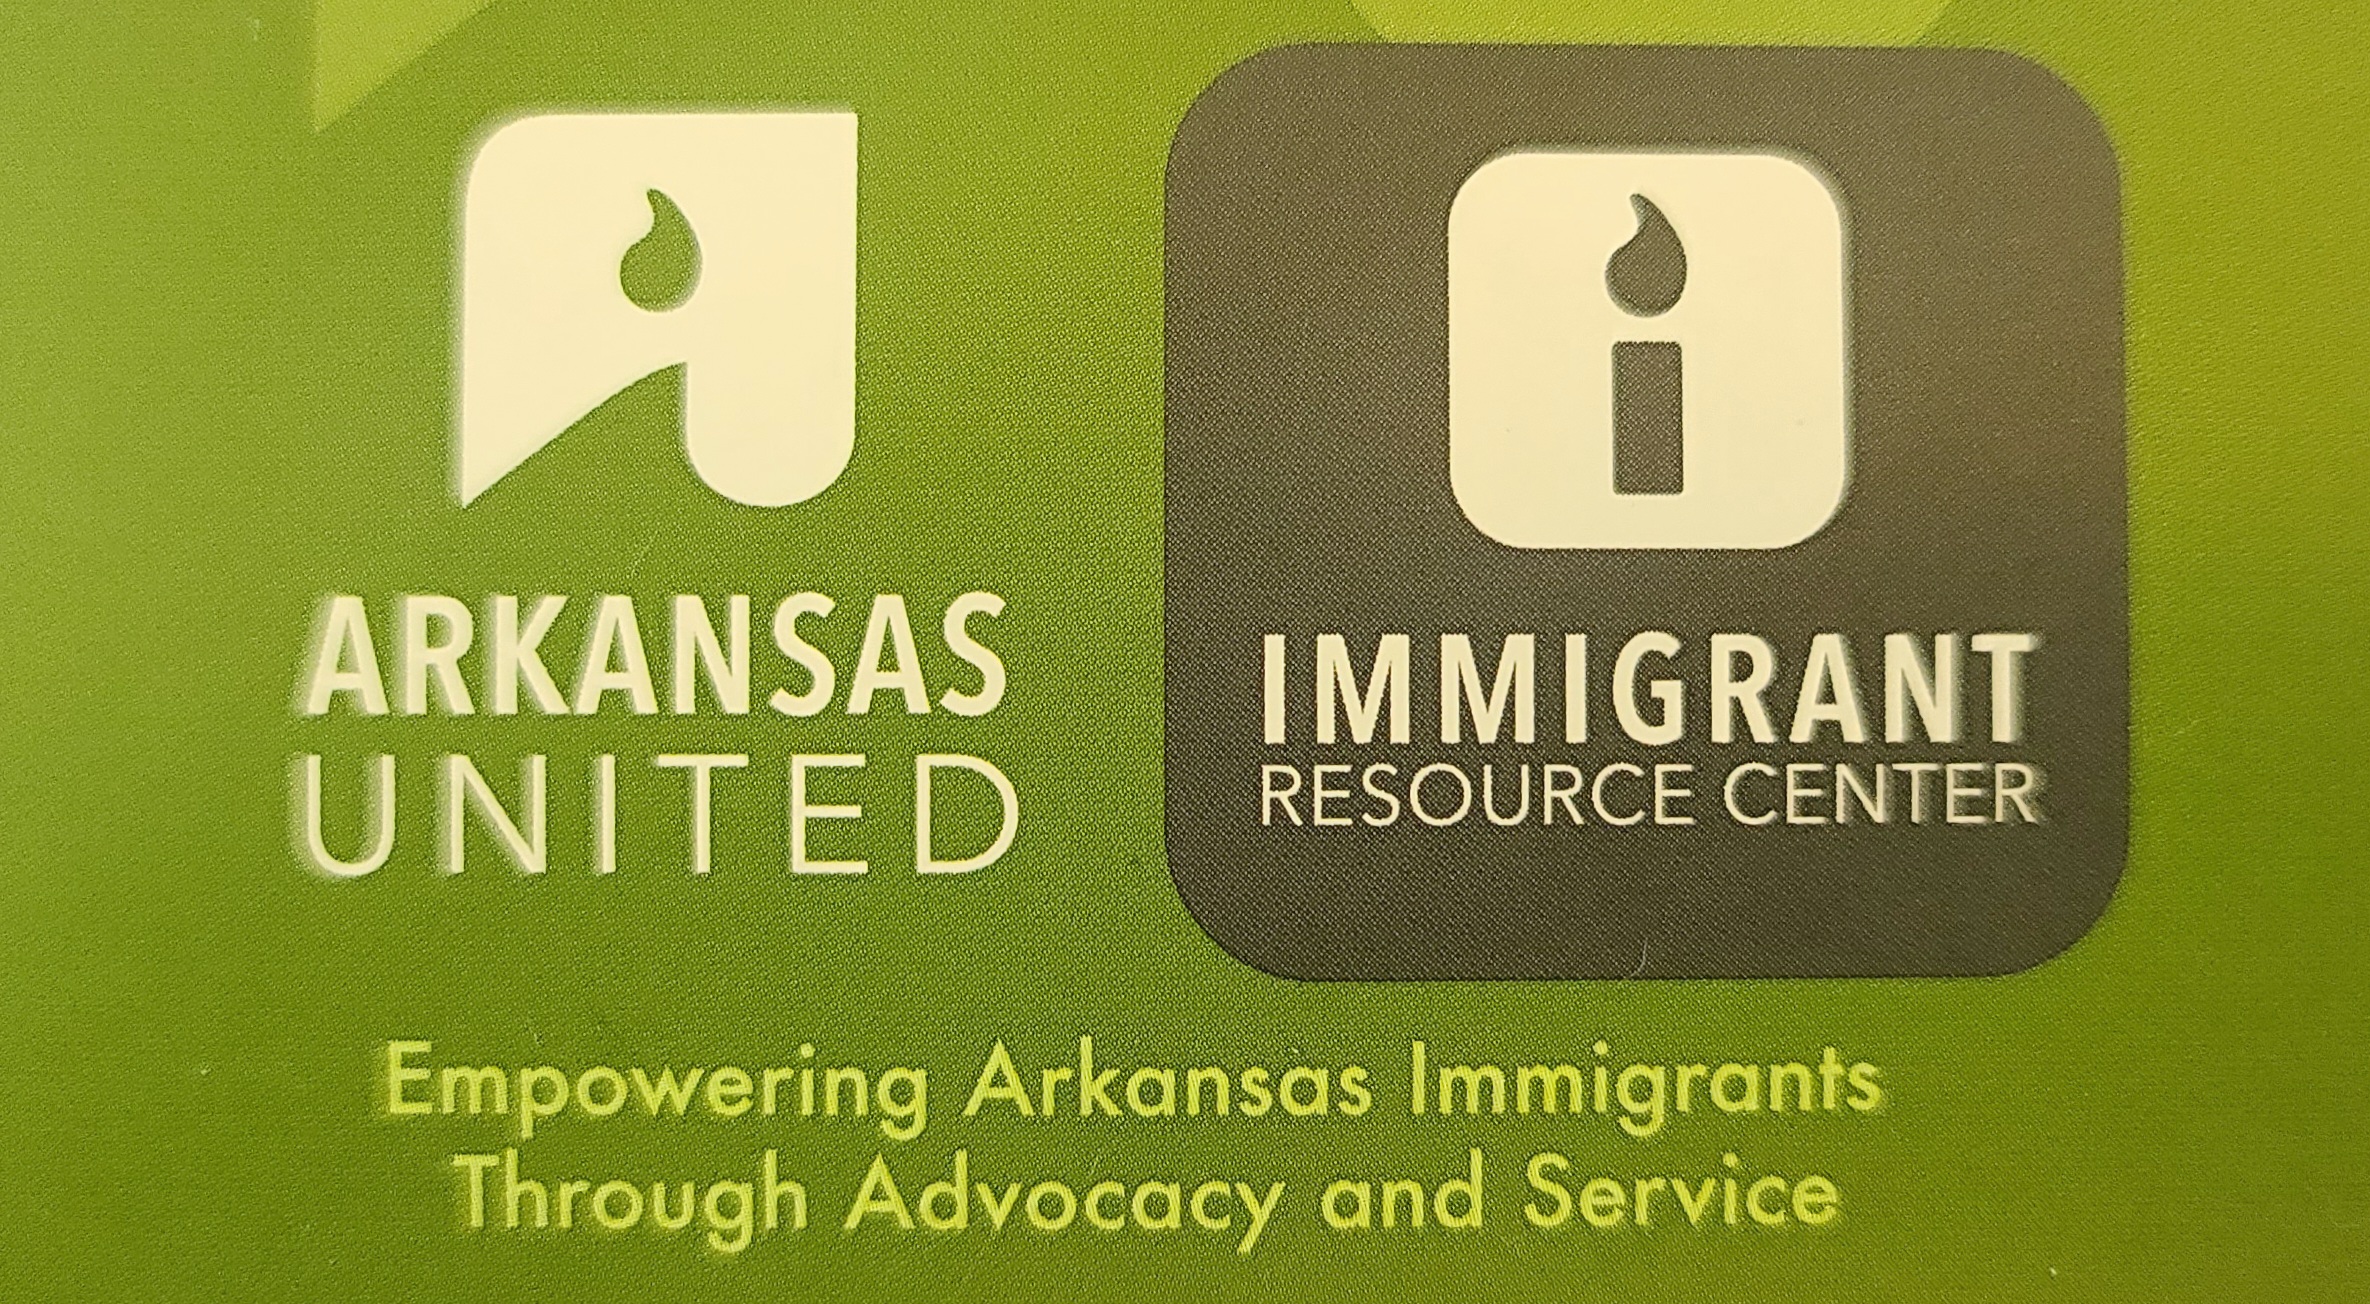 Arkansas United - Immigrant Resource Center